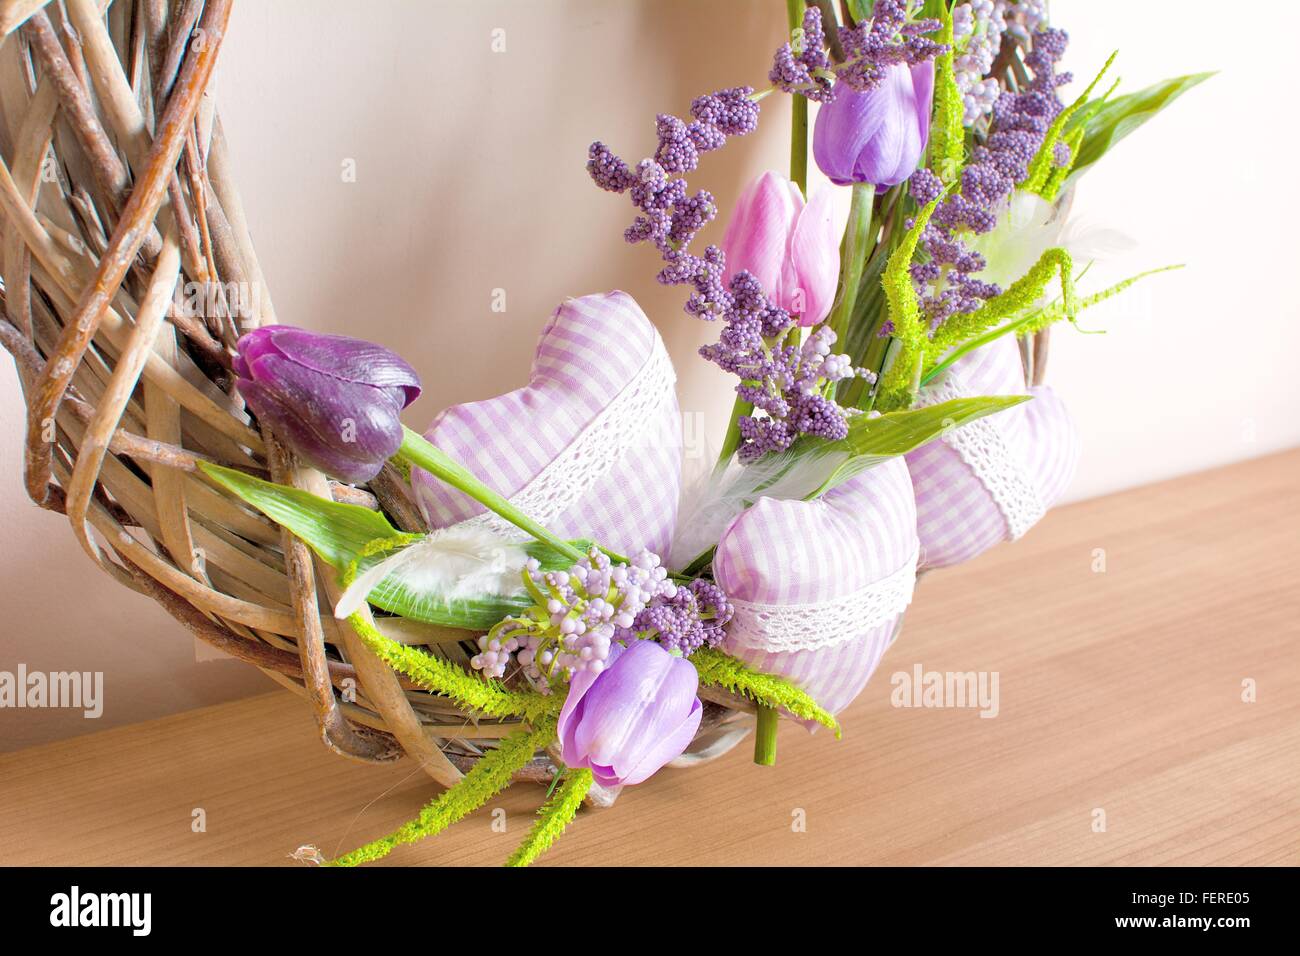 Pascua decorados caseros decoración floral en la mesa. Acuerdo de fabricación casera. Foto de stock